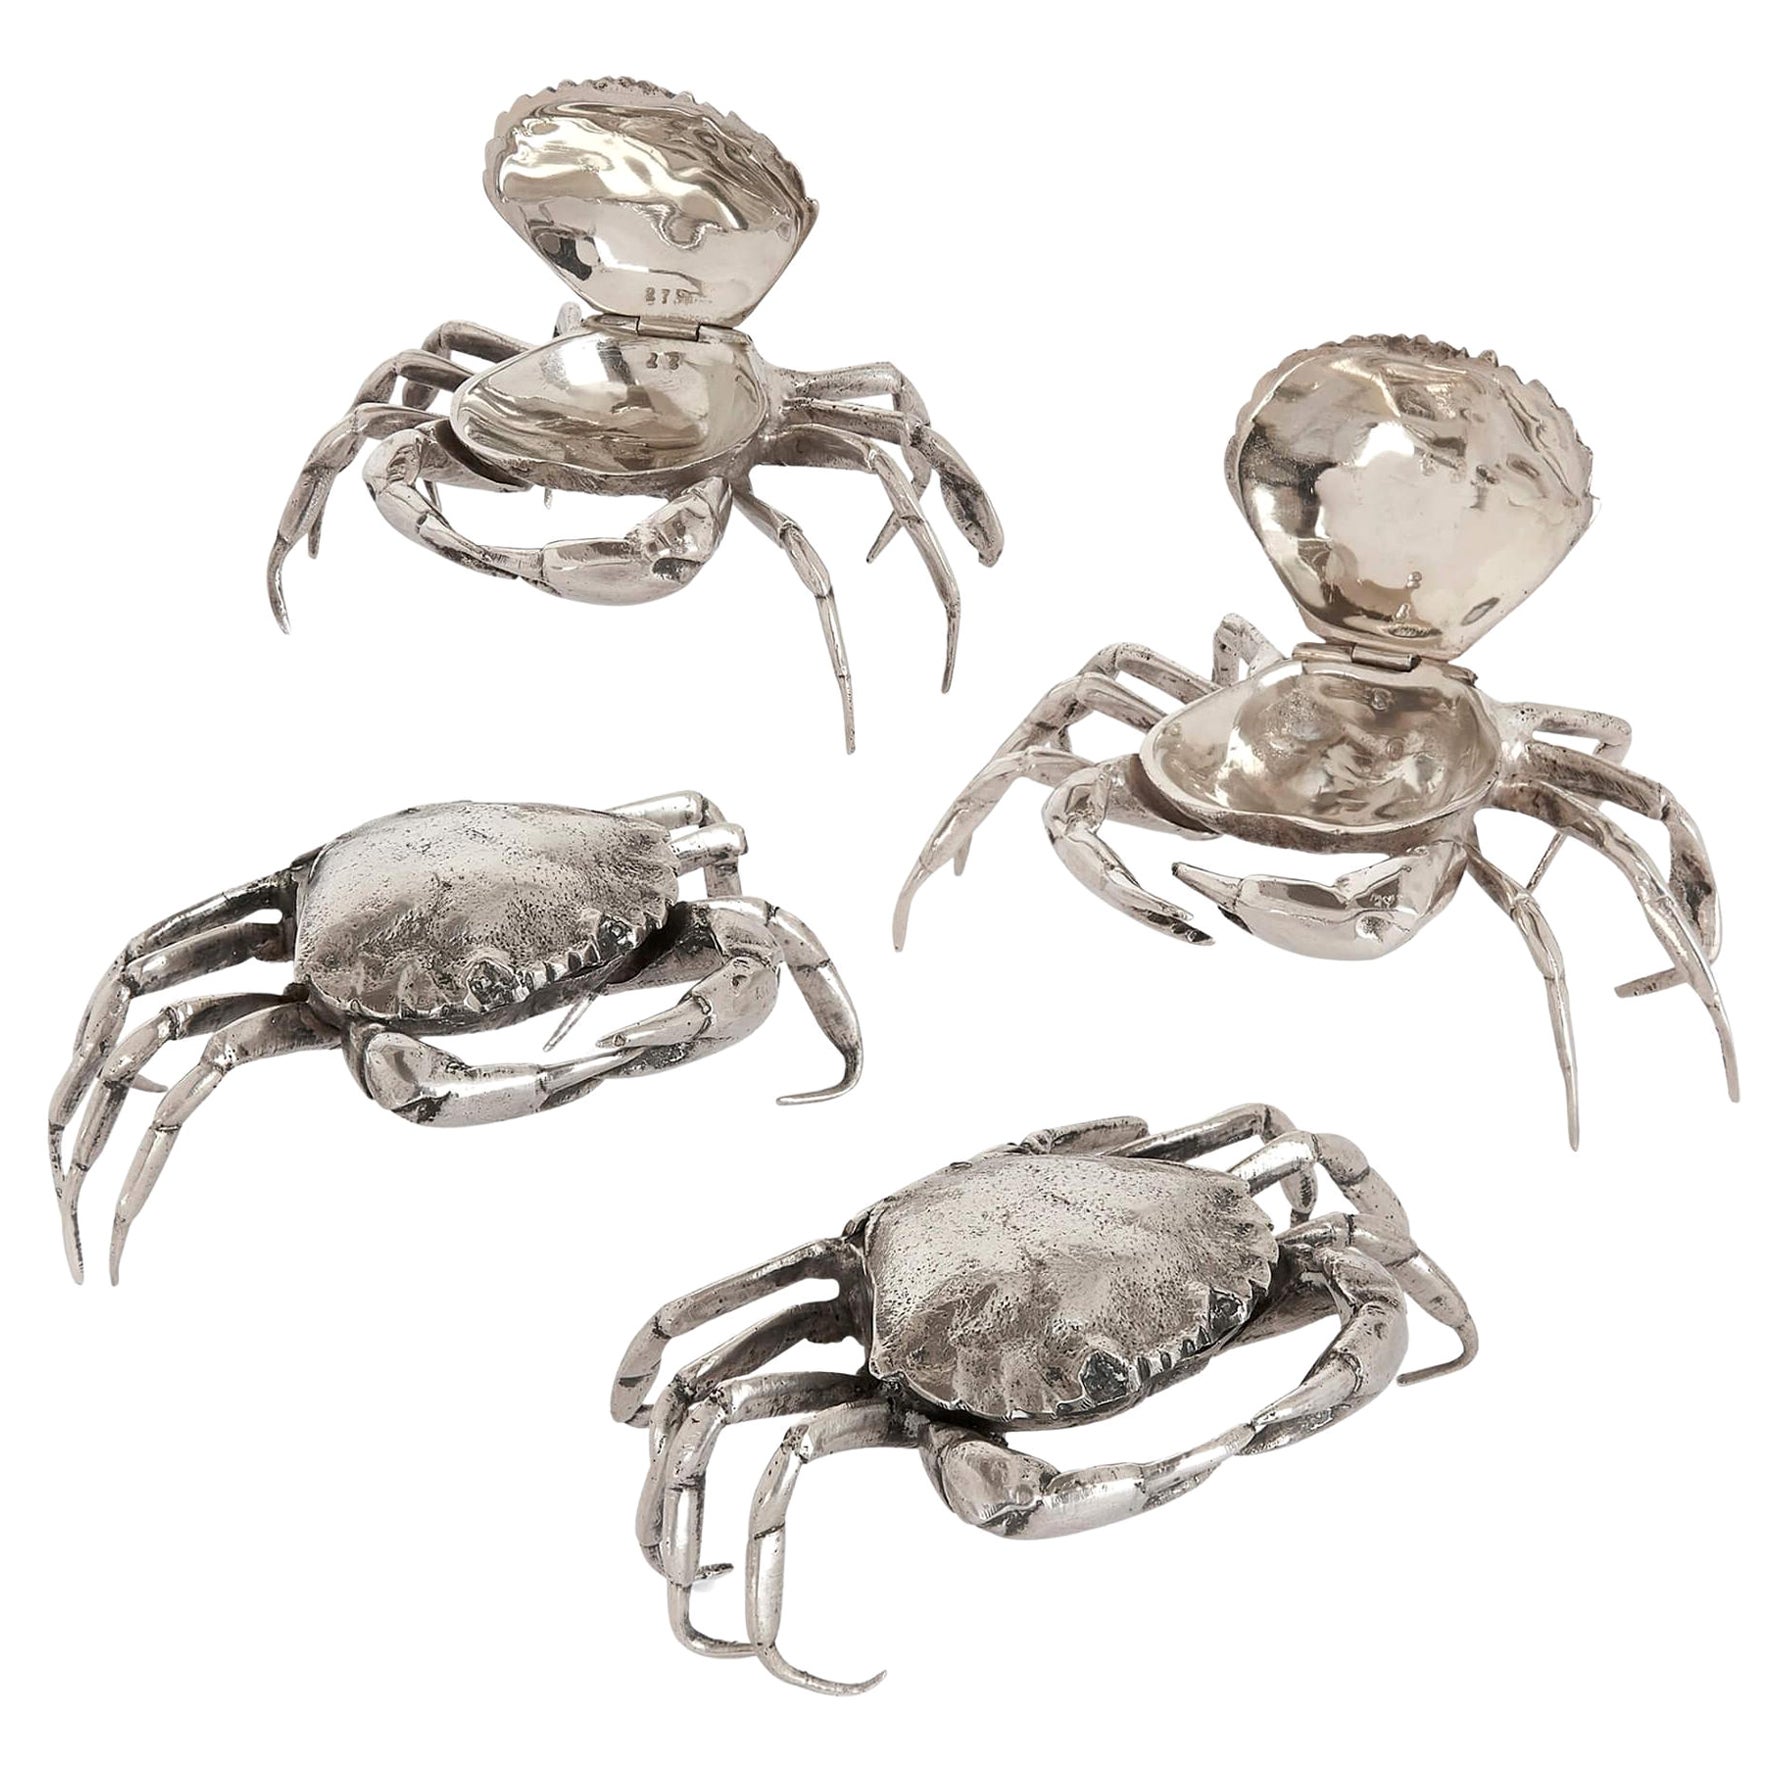 Set ungewöhnlicher spanischer Krabbenschachteln aus massivem Silber